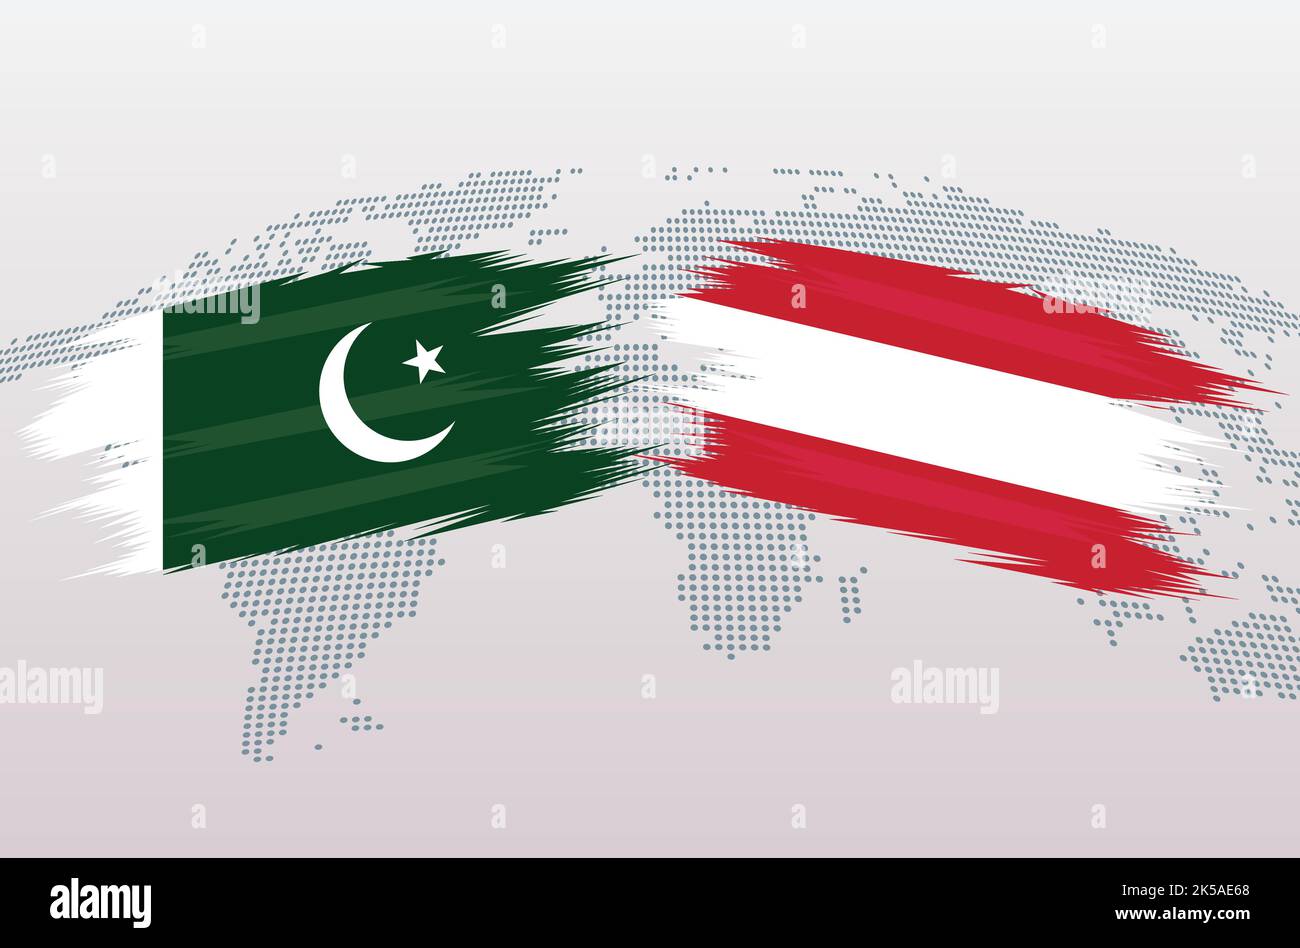 Bandiere Pakistan vs Austria. Bandiere della Repubblica islamica del Pakistan vs Austria, isolate su sfondo grigio della mappa del mondo. Illustrazione vettoriale. Illustrazione Vettoriale